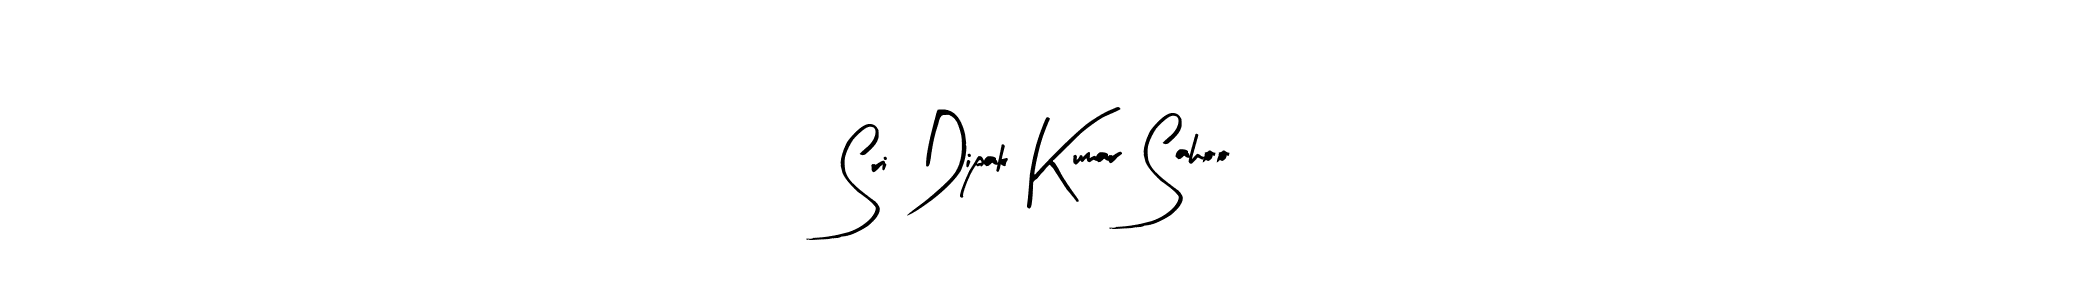 How to Draw Sri Dipak Kumar Sahoo signature style? Arty Signature is a latest design signature styles for name Sri Dipak Kumar Sahoo. Sri Dipak Kumar Sahoo signature style 8 images and pictures png